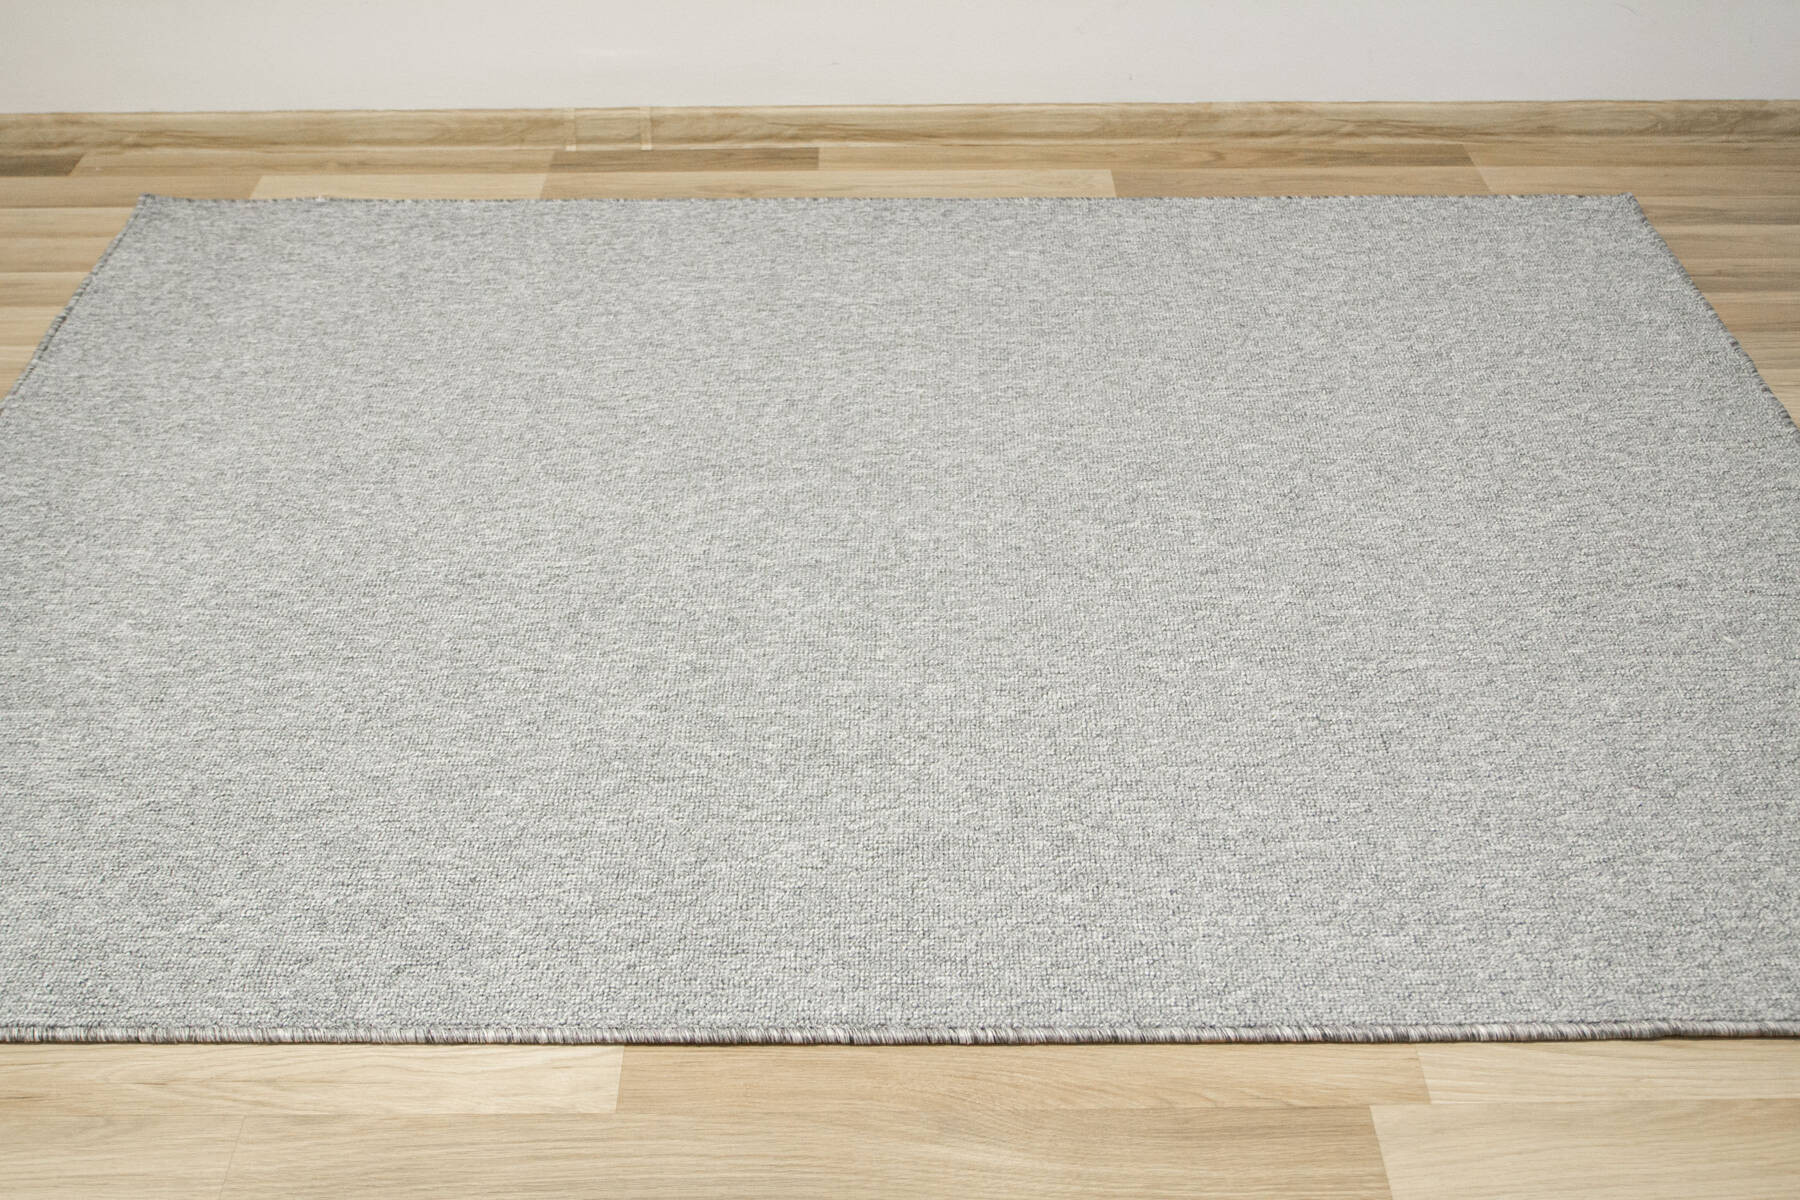 Metrážny koberec Debut 73 - šedý